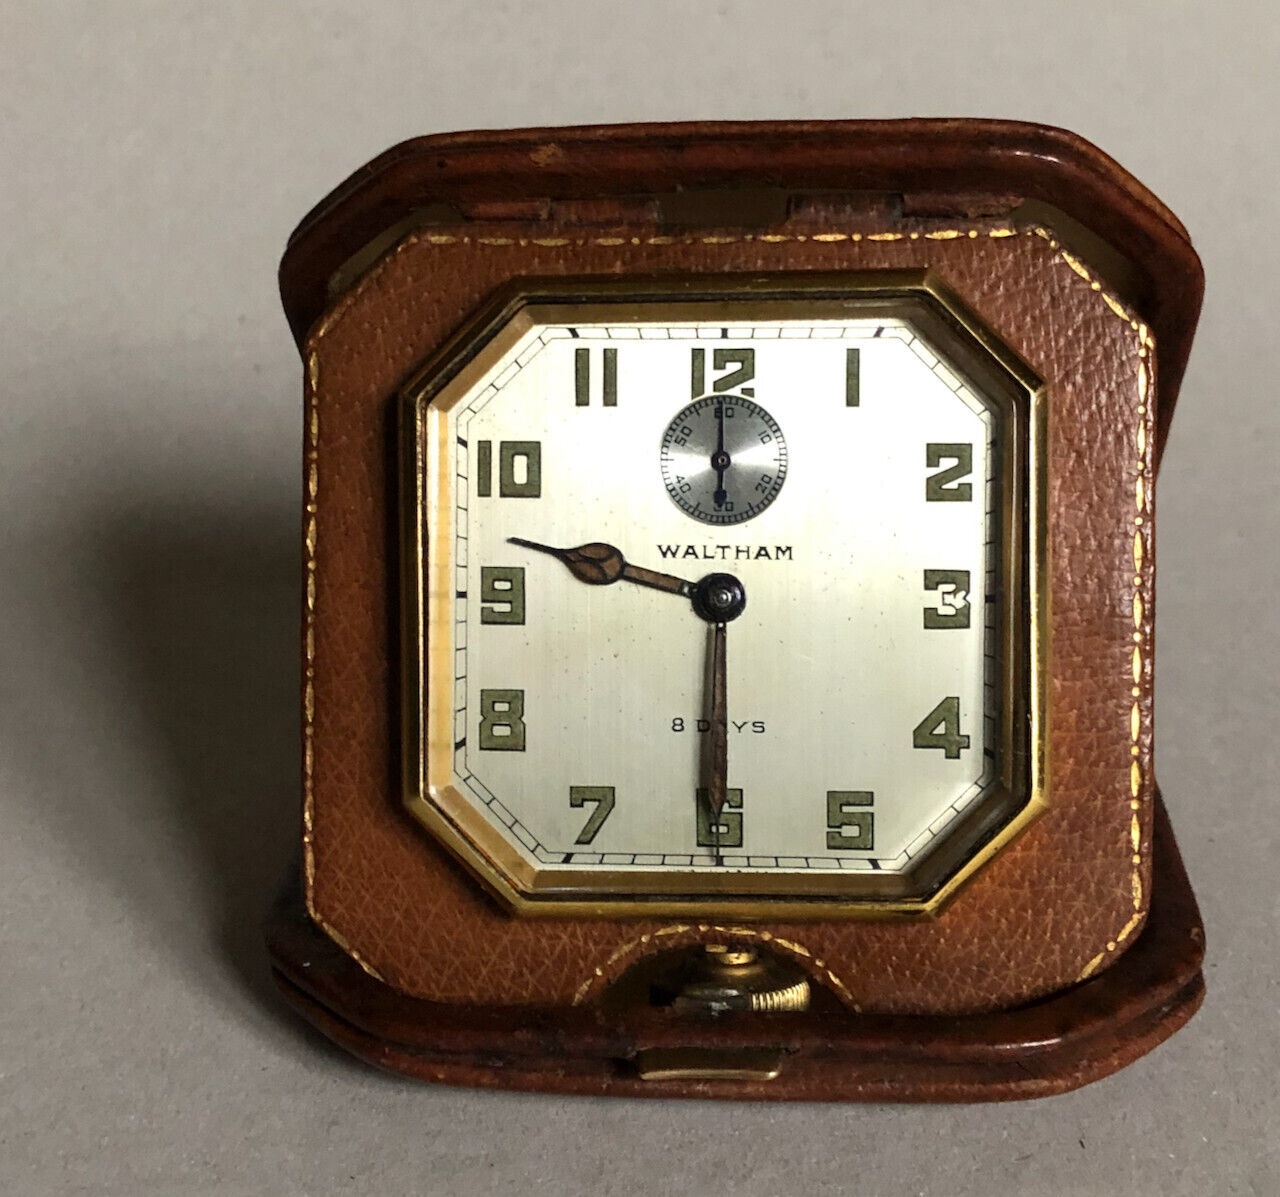 [Jean Borotra] Horloge de voyage Waltham — trophée tennis 7th Regt Armory — 1934